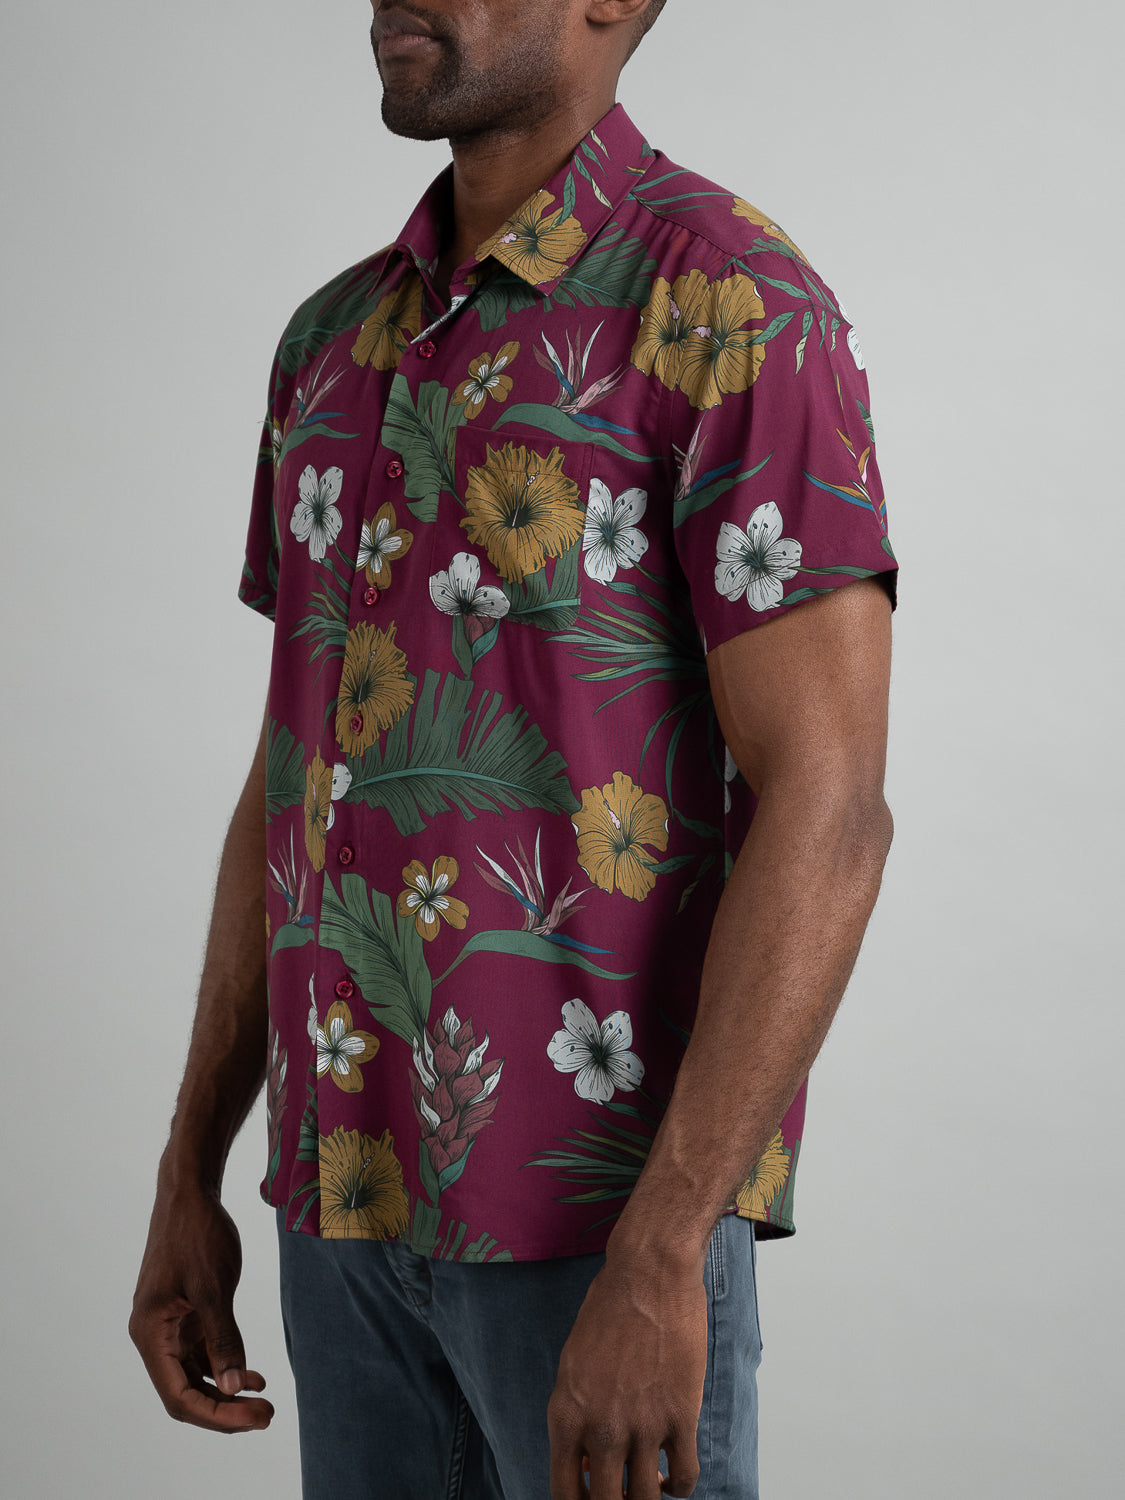 Bali Short Sleeve Printed Rayon Shirt